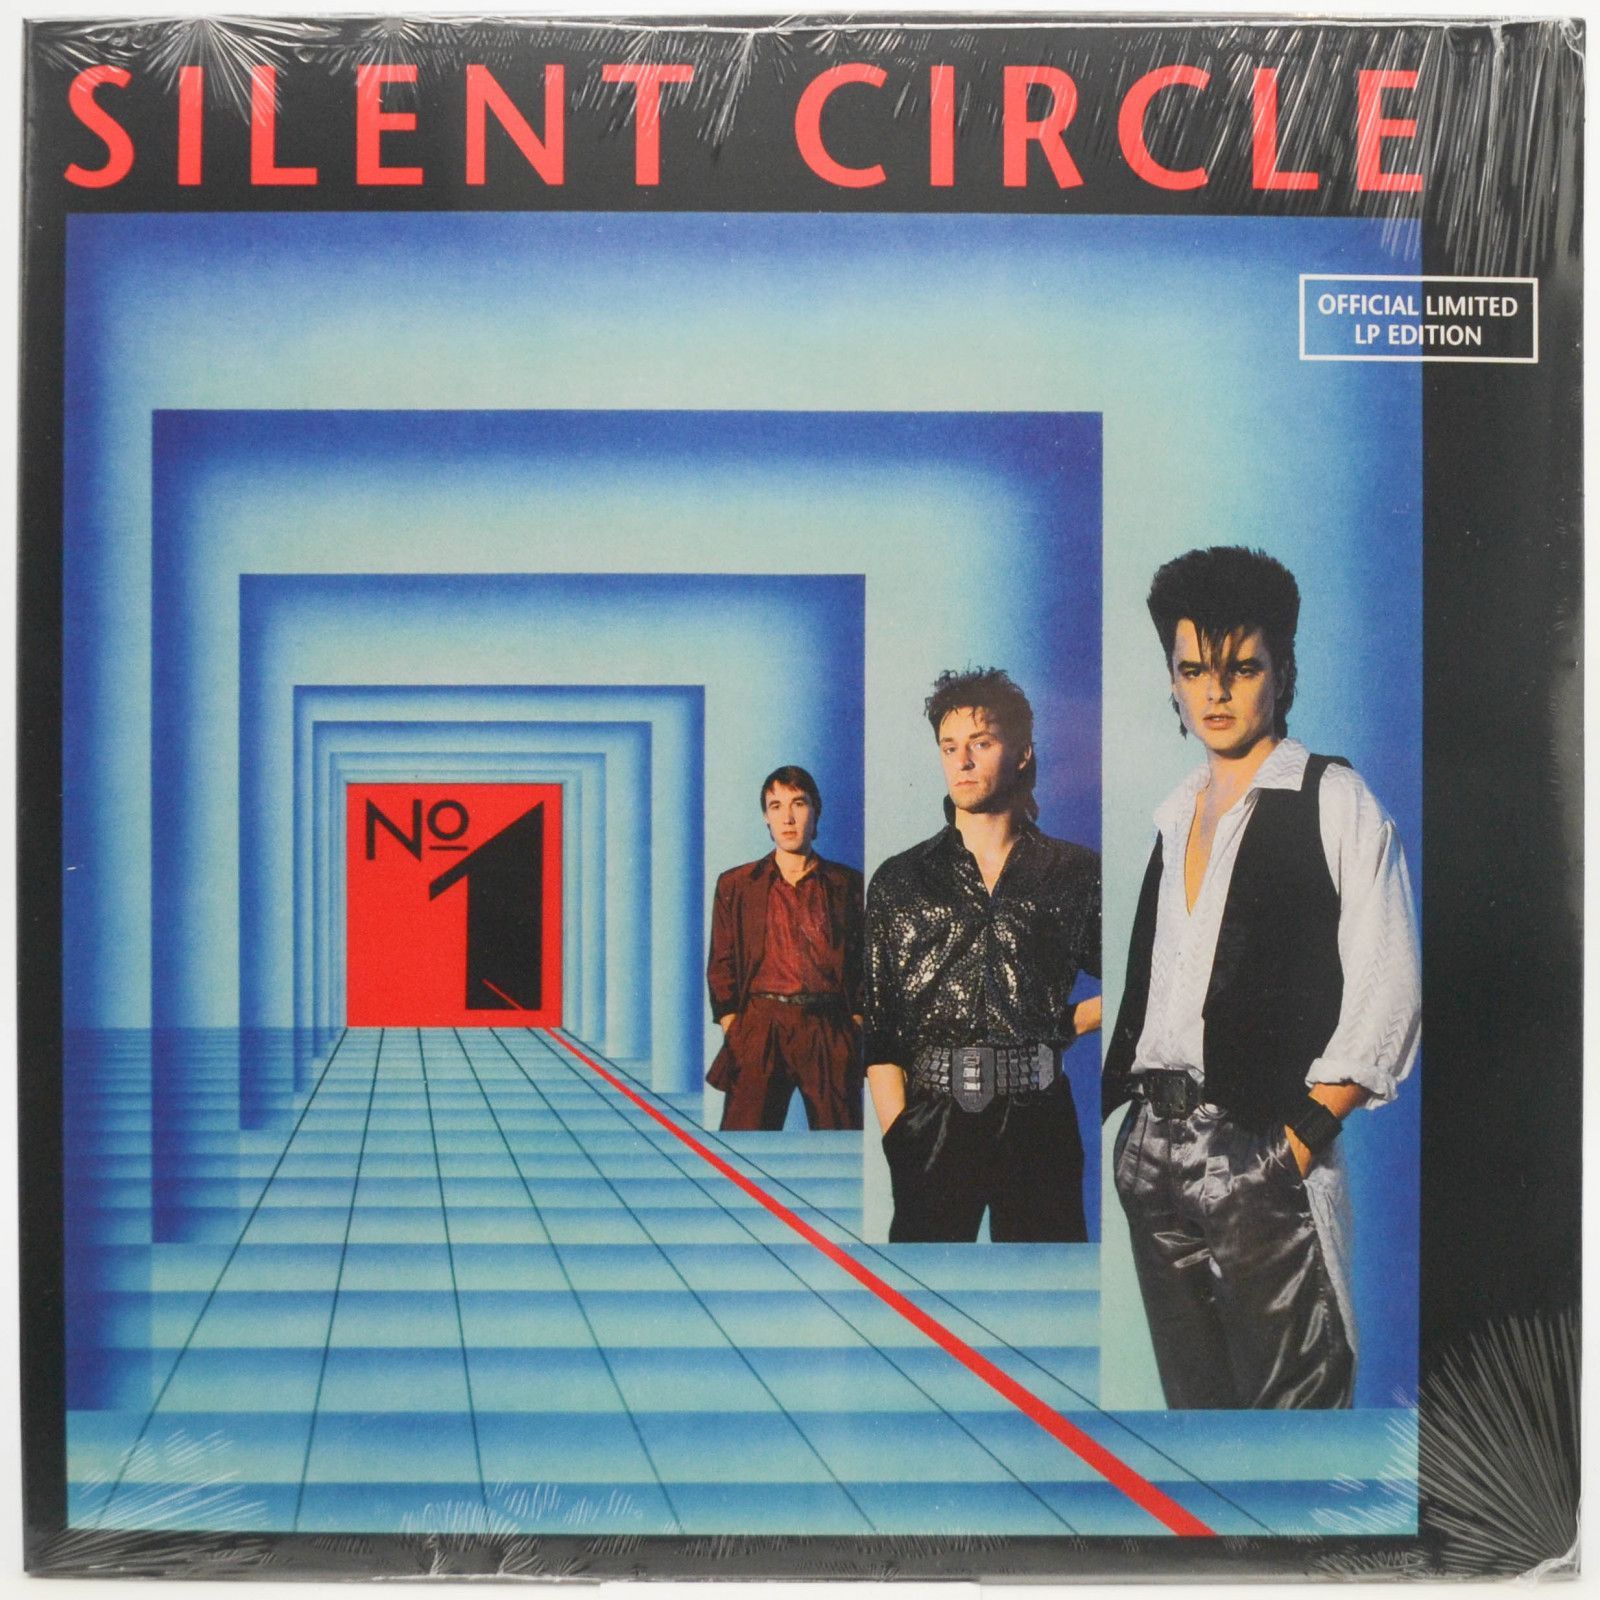 Silent Circle — No 1, 1986